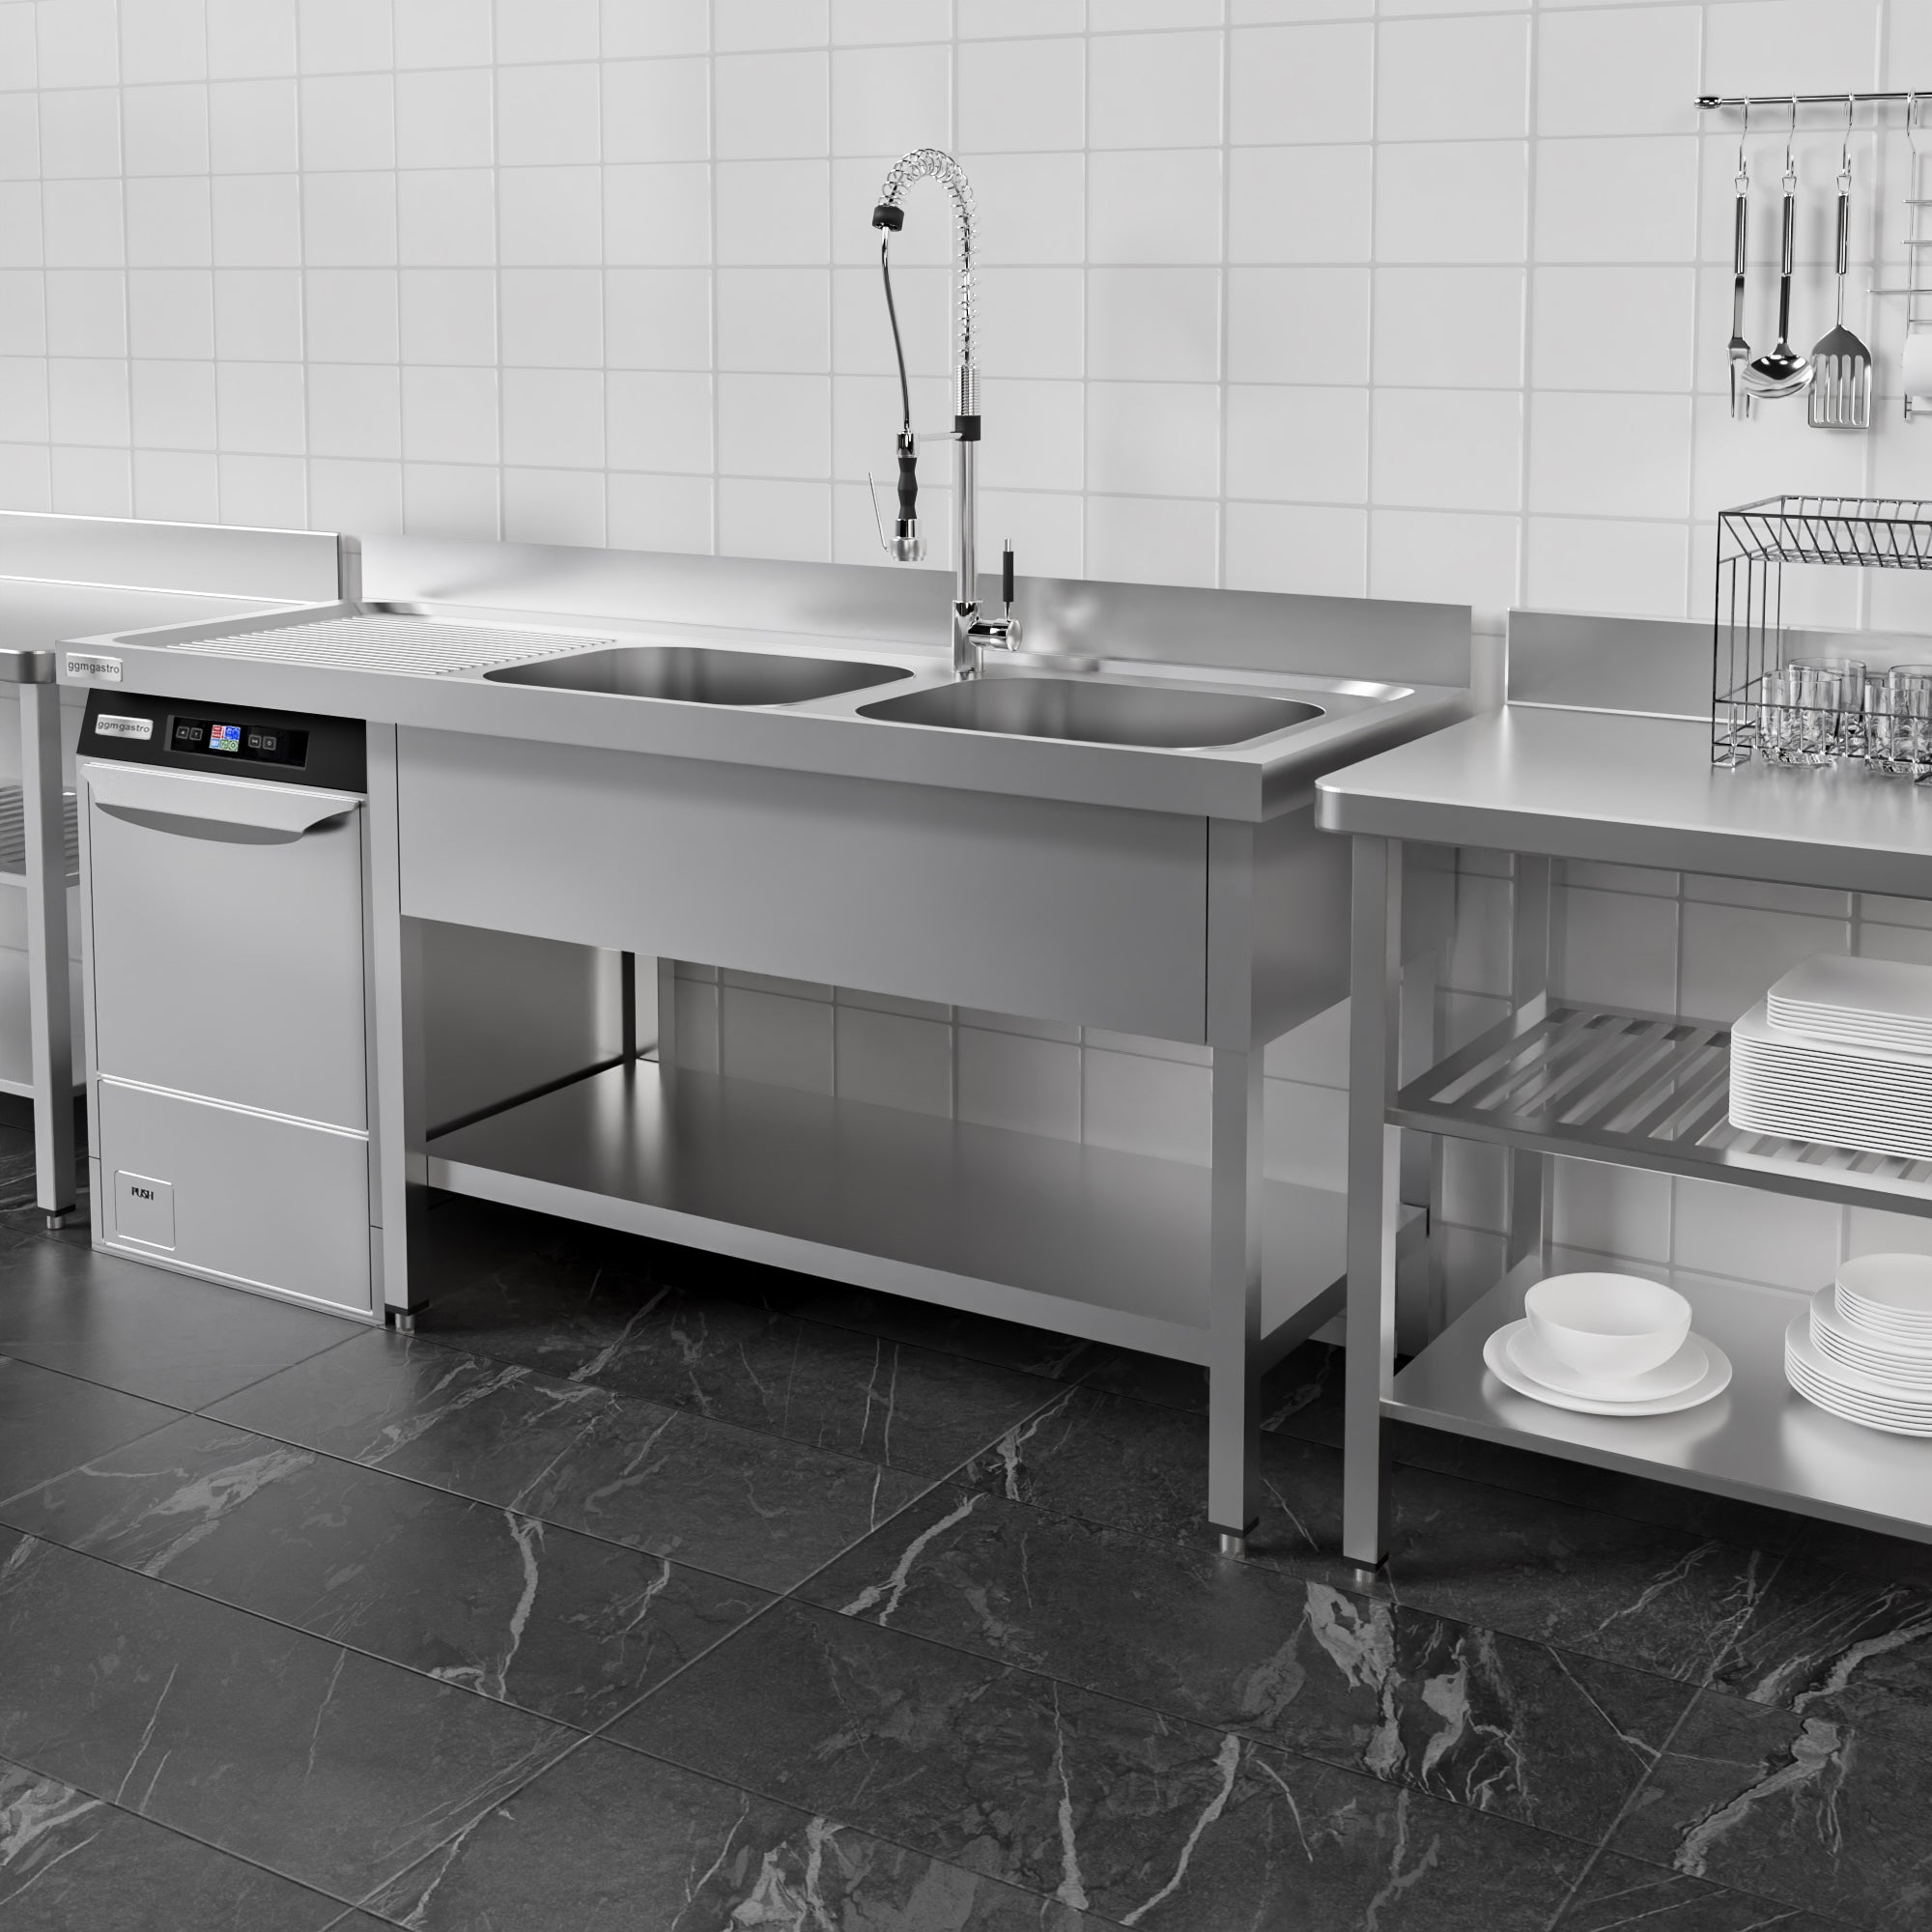 Vaskeborde med plads til opvaskemaskine 1,6m - 2 Vaske til Højre L 40 x B 40 x D 25 cm